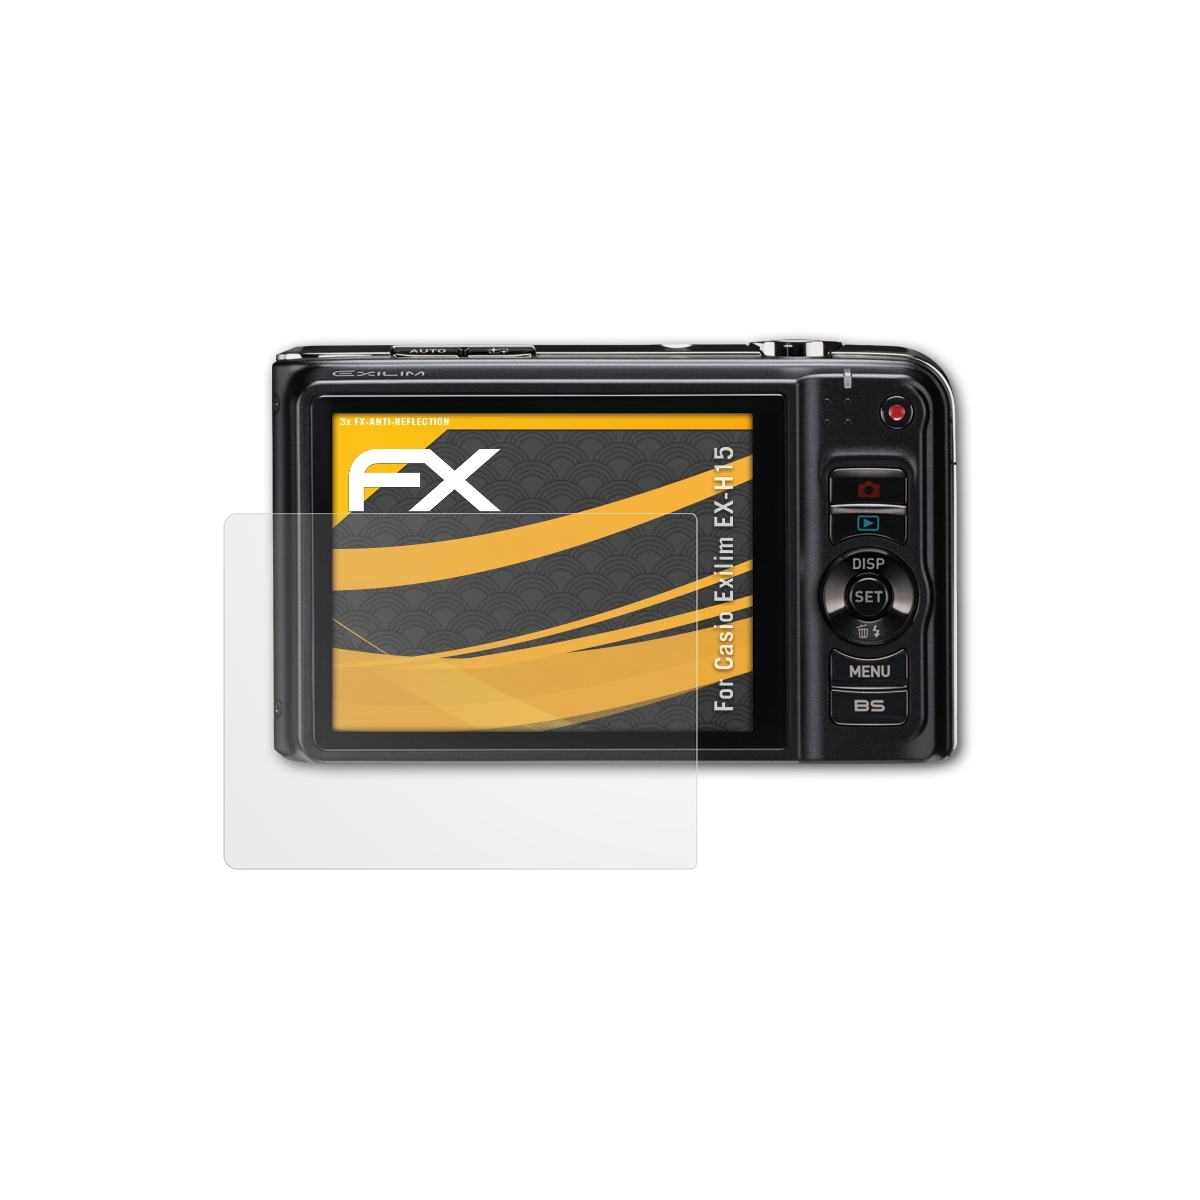 Exilim Casio ATFOLIX Displayschutz(für EX-H15) FX-Antireflex 3x